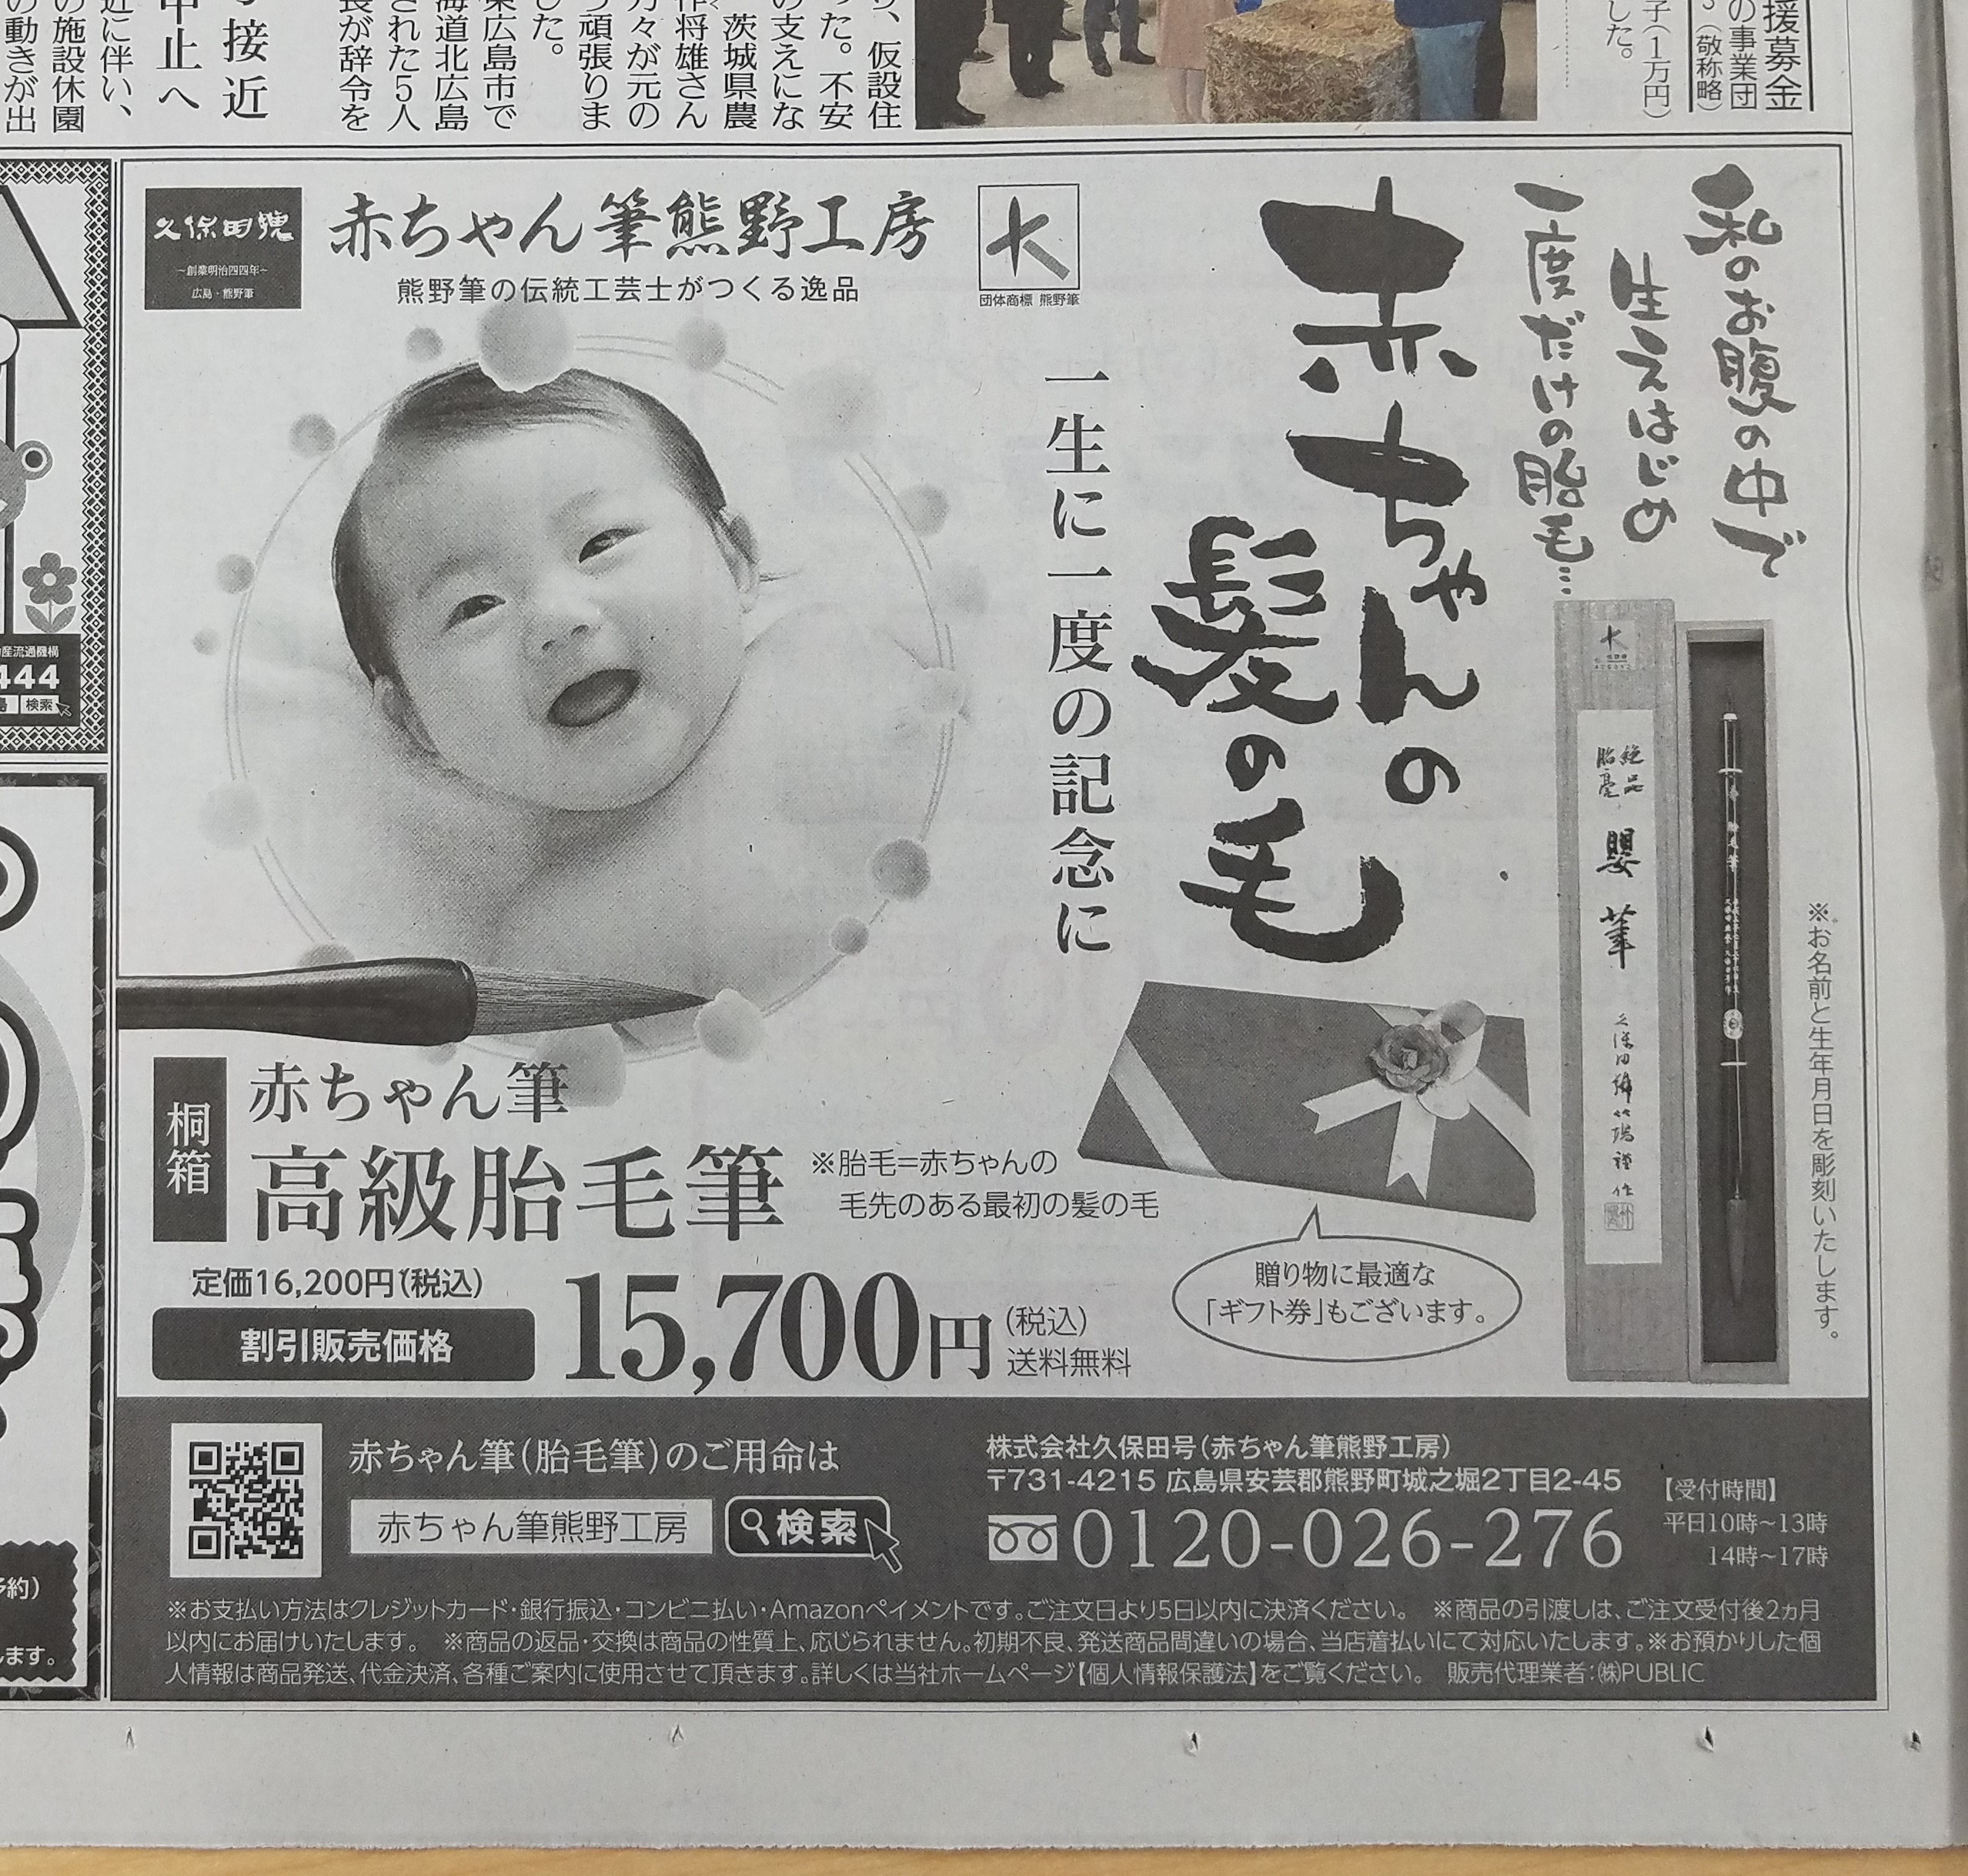 赤ちゃん筆の新聞広告を掲載しました。